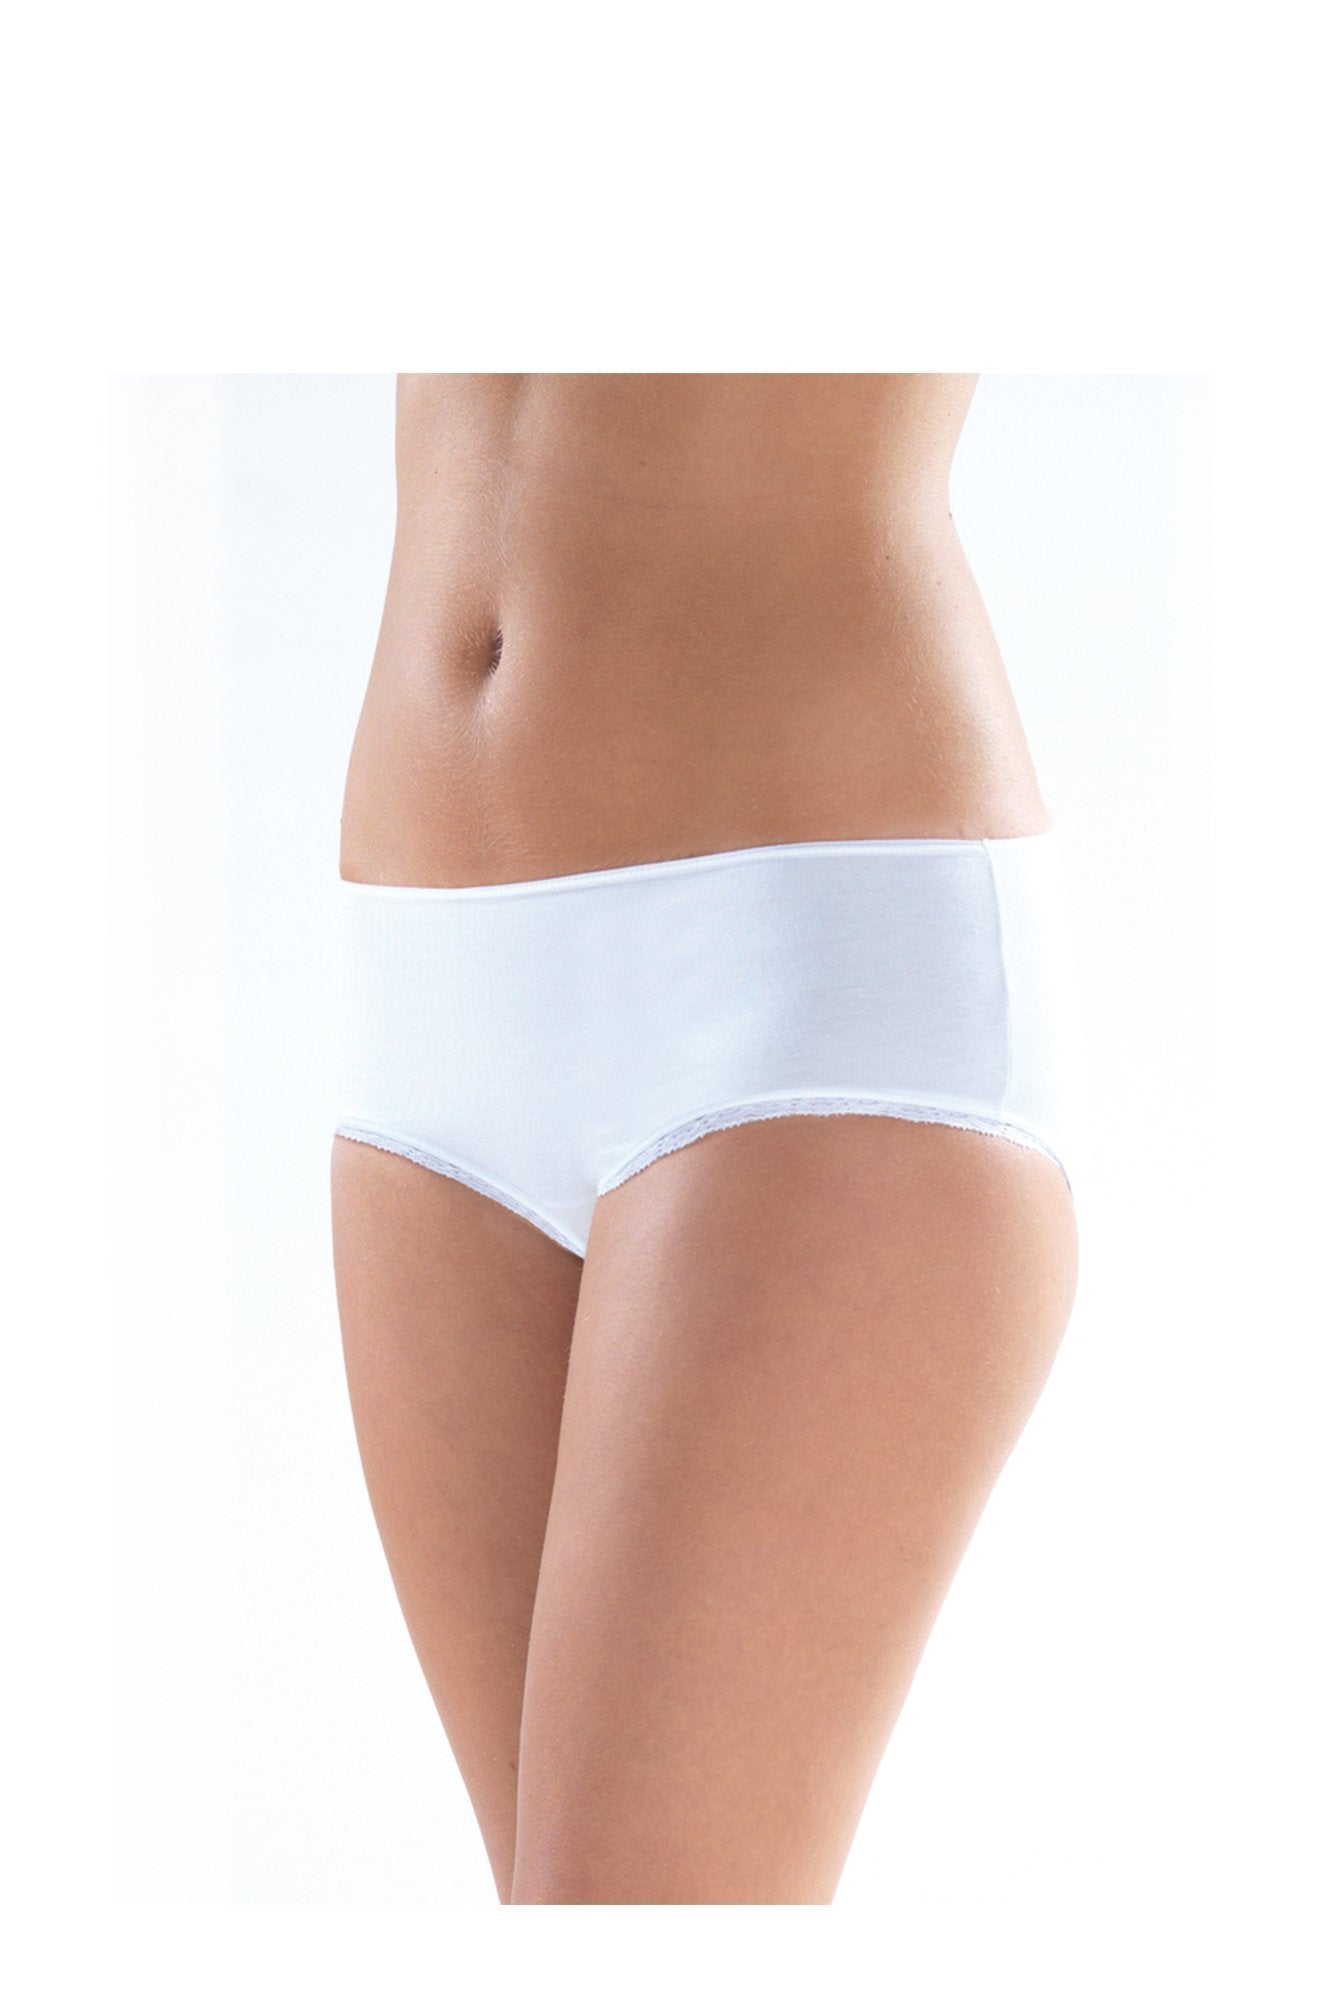 Ladies' Slip-1363 underwear blackspade White L 46% Modal 46% Cotton 8% Elastane